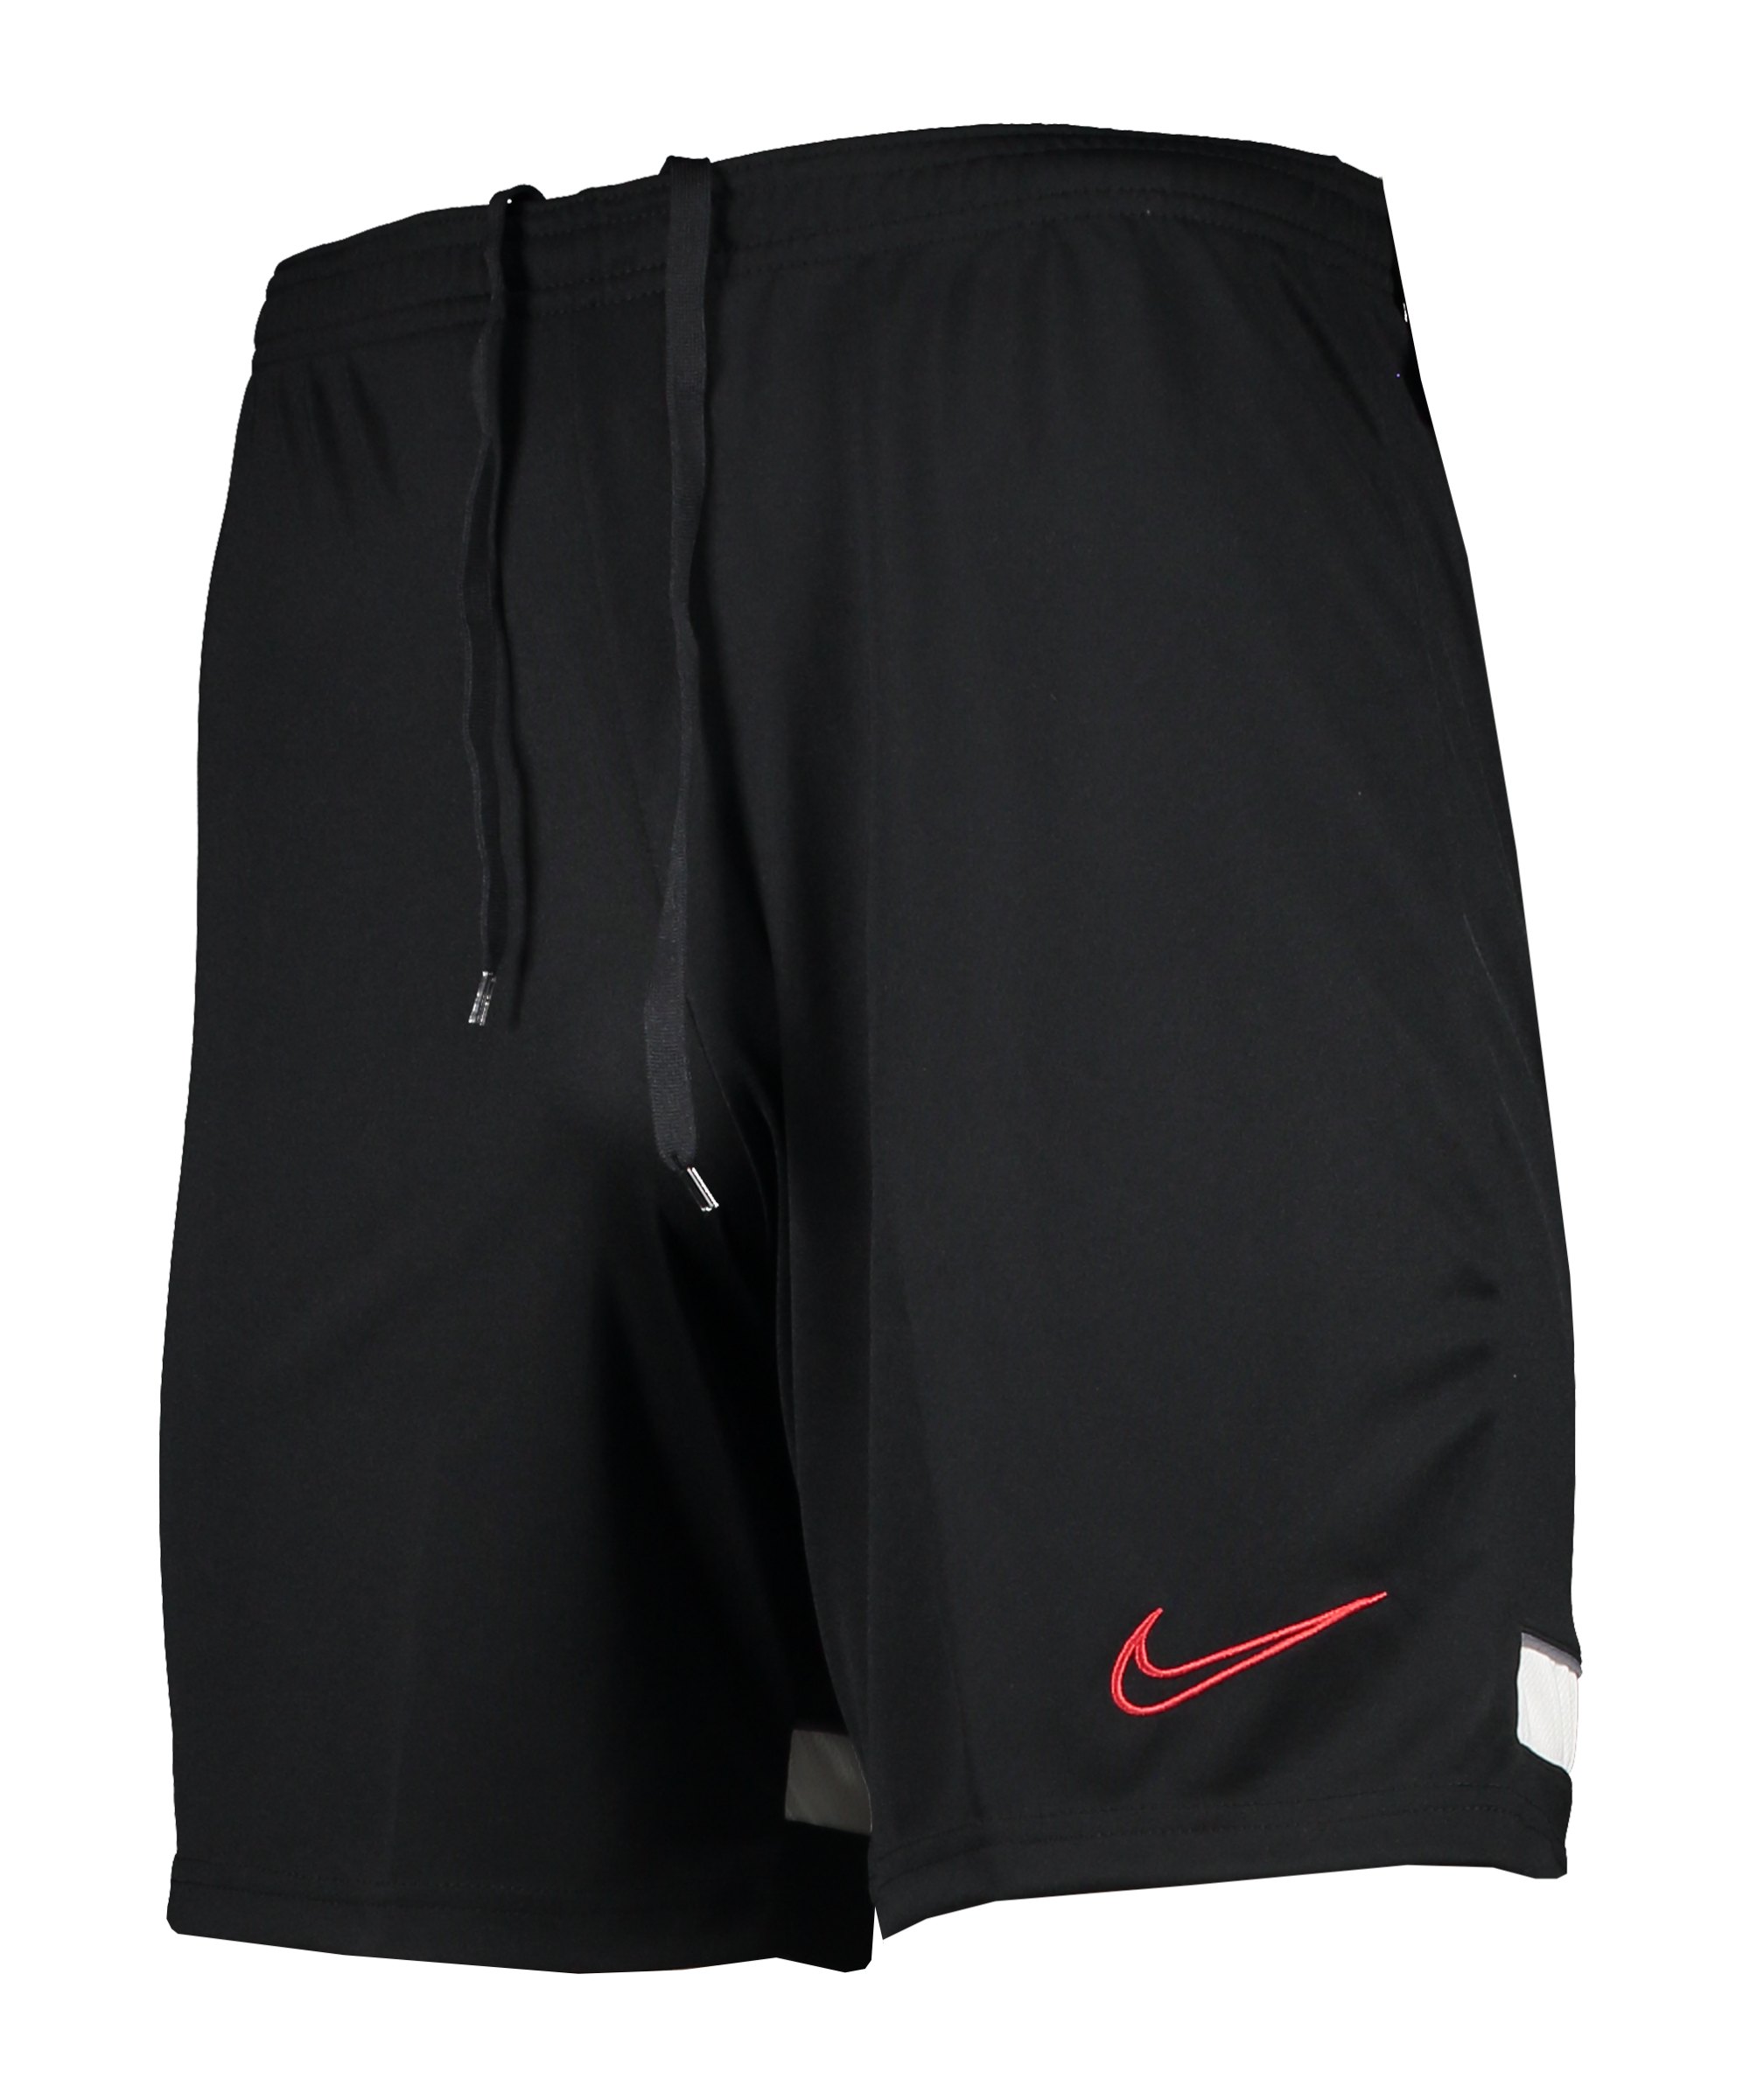 Nike Academy 21 Short Schwarz Grau F020 - schwarz